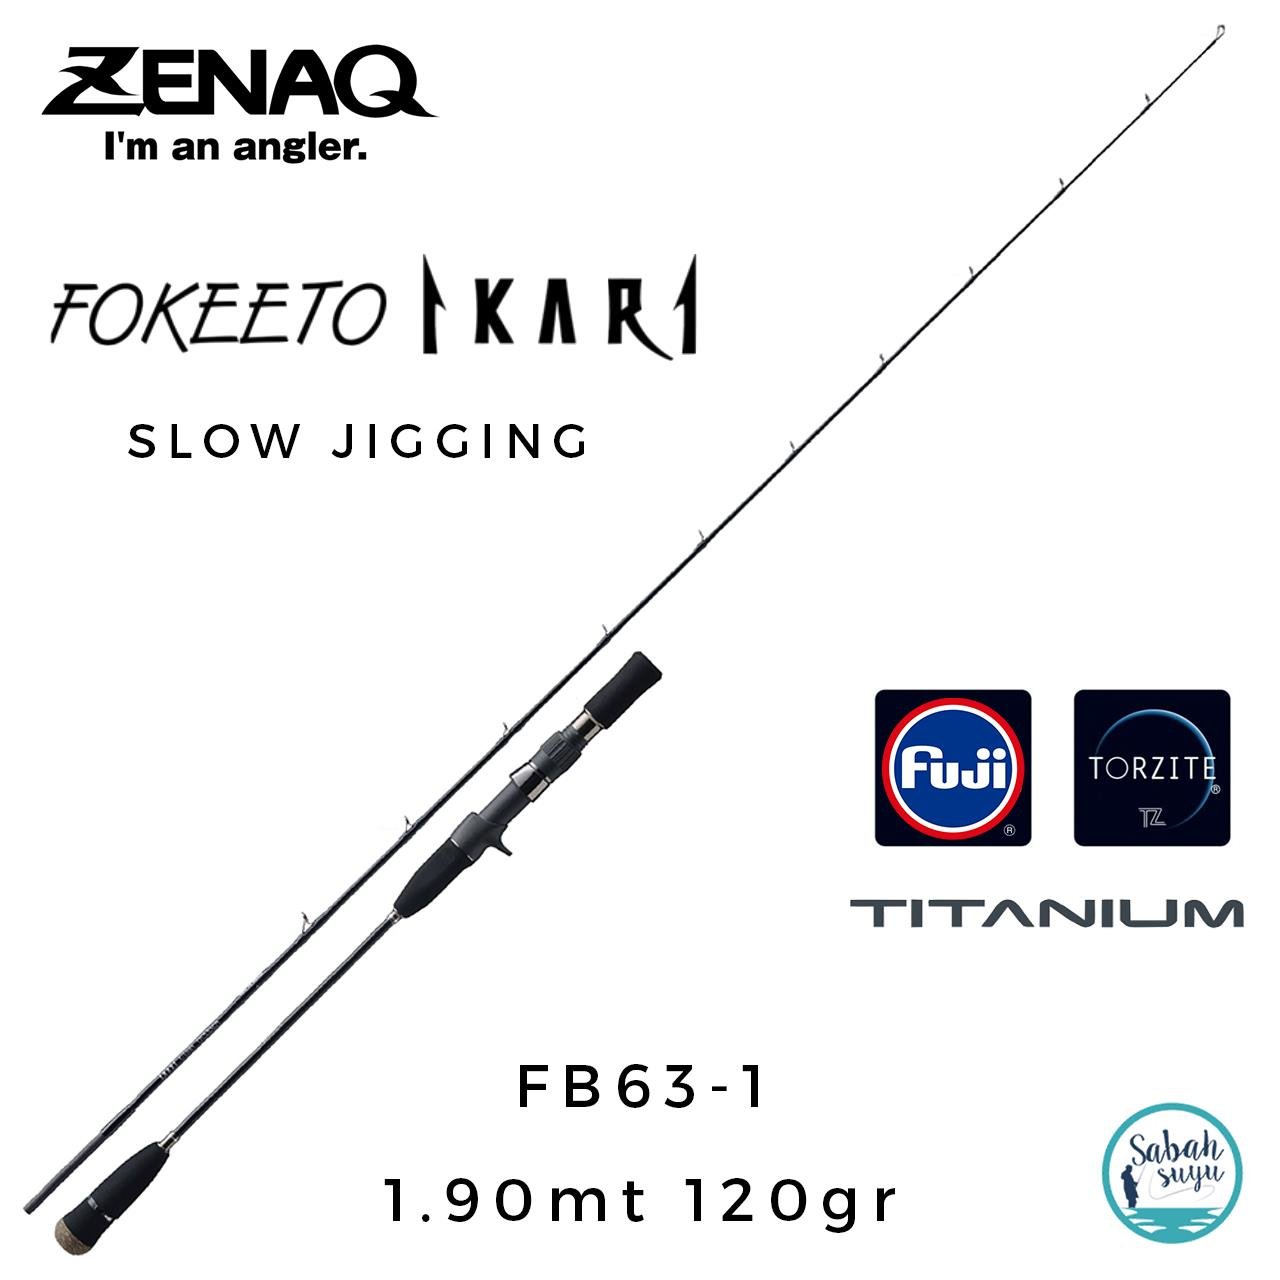 Zenaq Fokeeto FB63-1 İkari 190cm 120gr Tetikli Slow Jigging Kamış